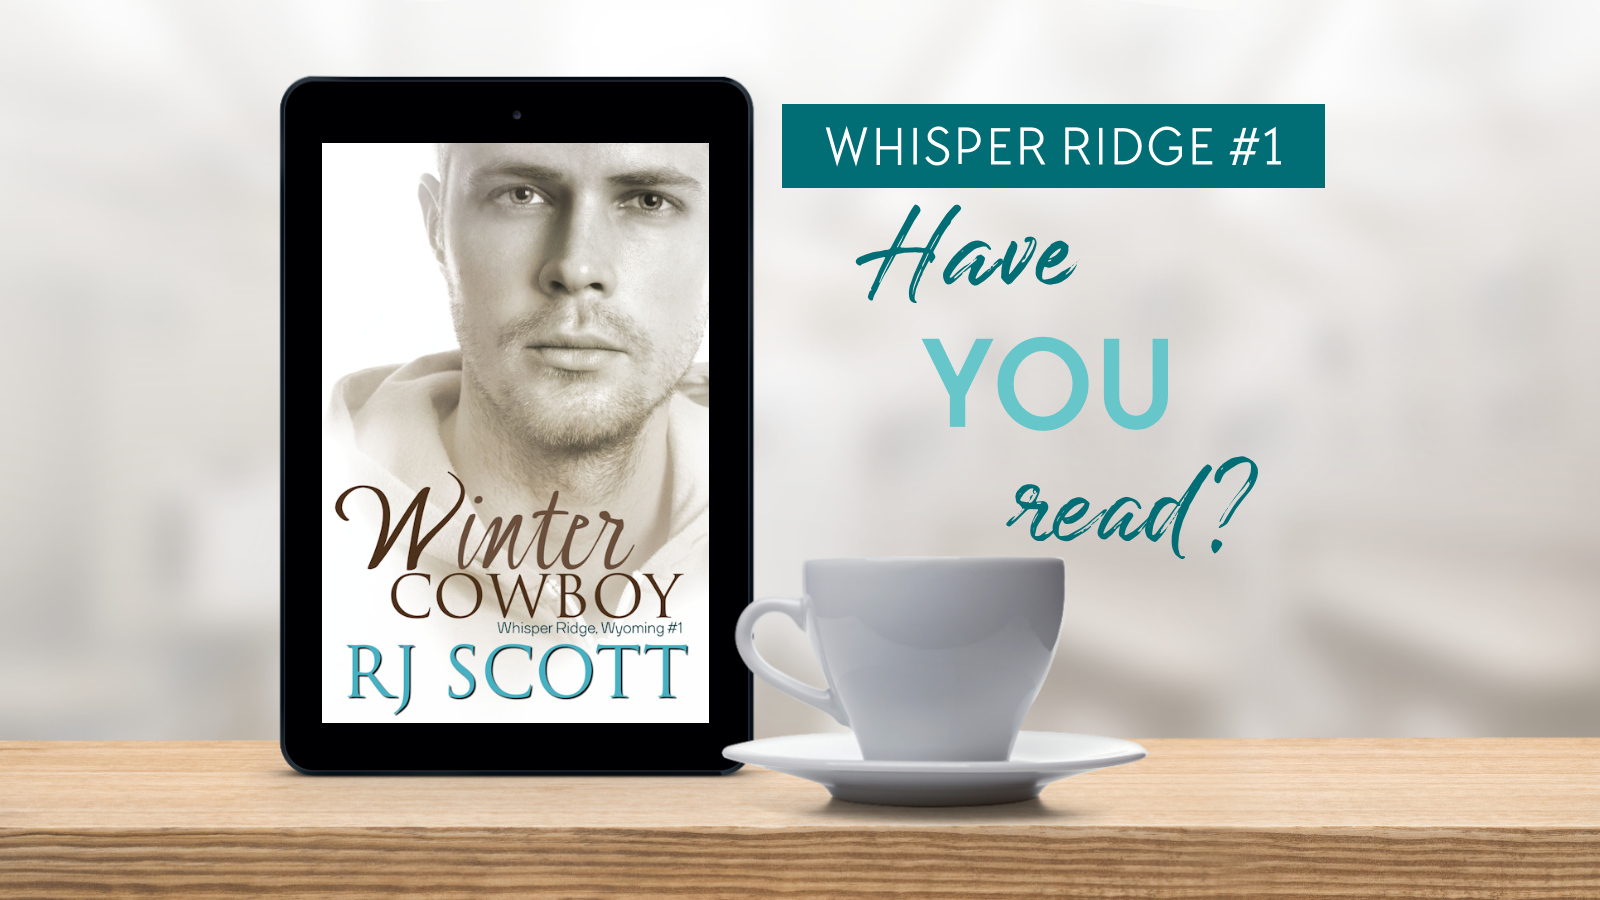 Have you read Whisper Ridge MM Cowboys Romance RJ Scott